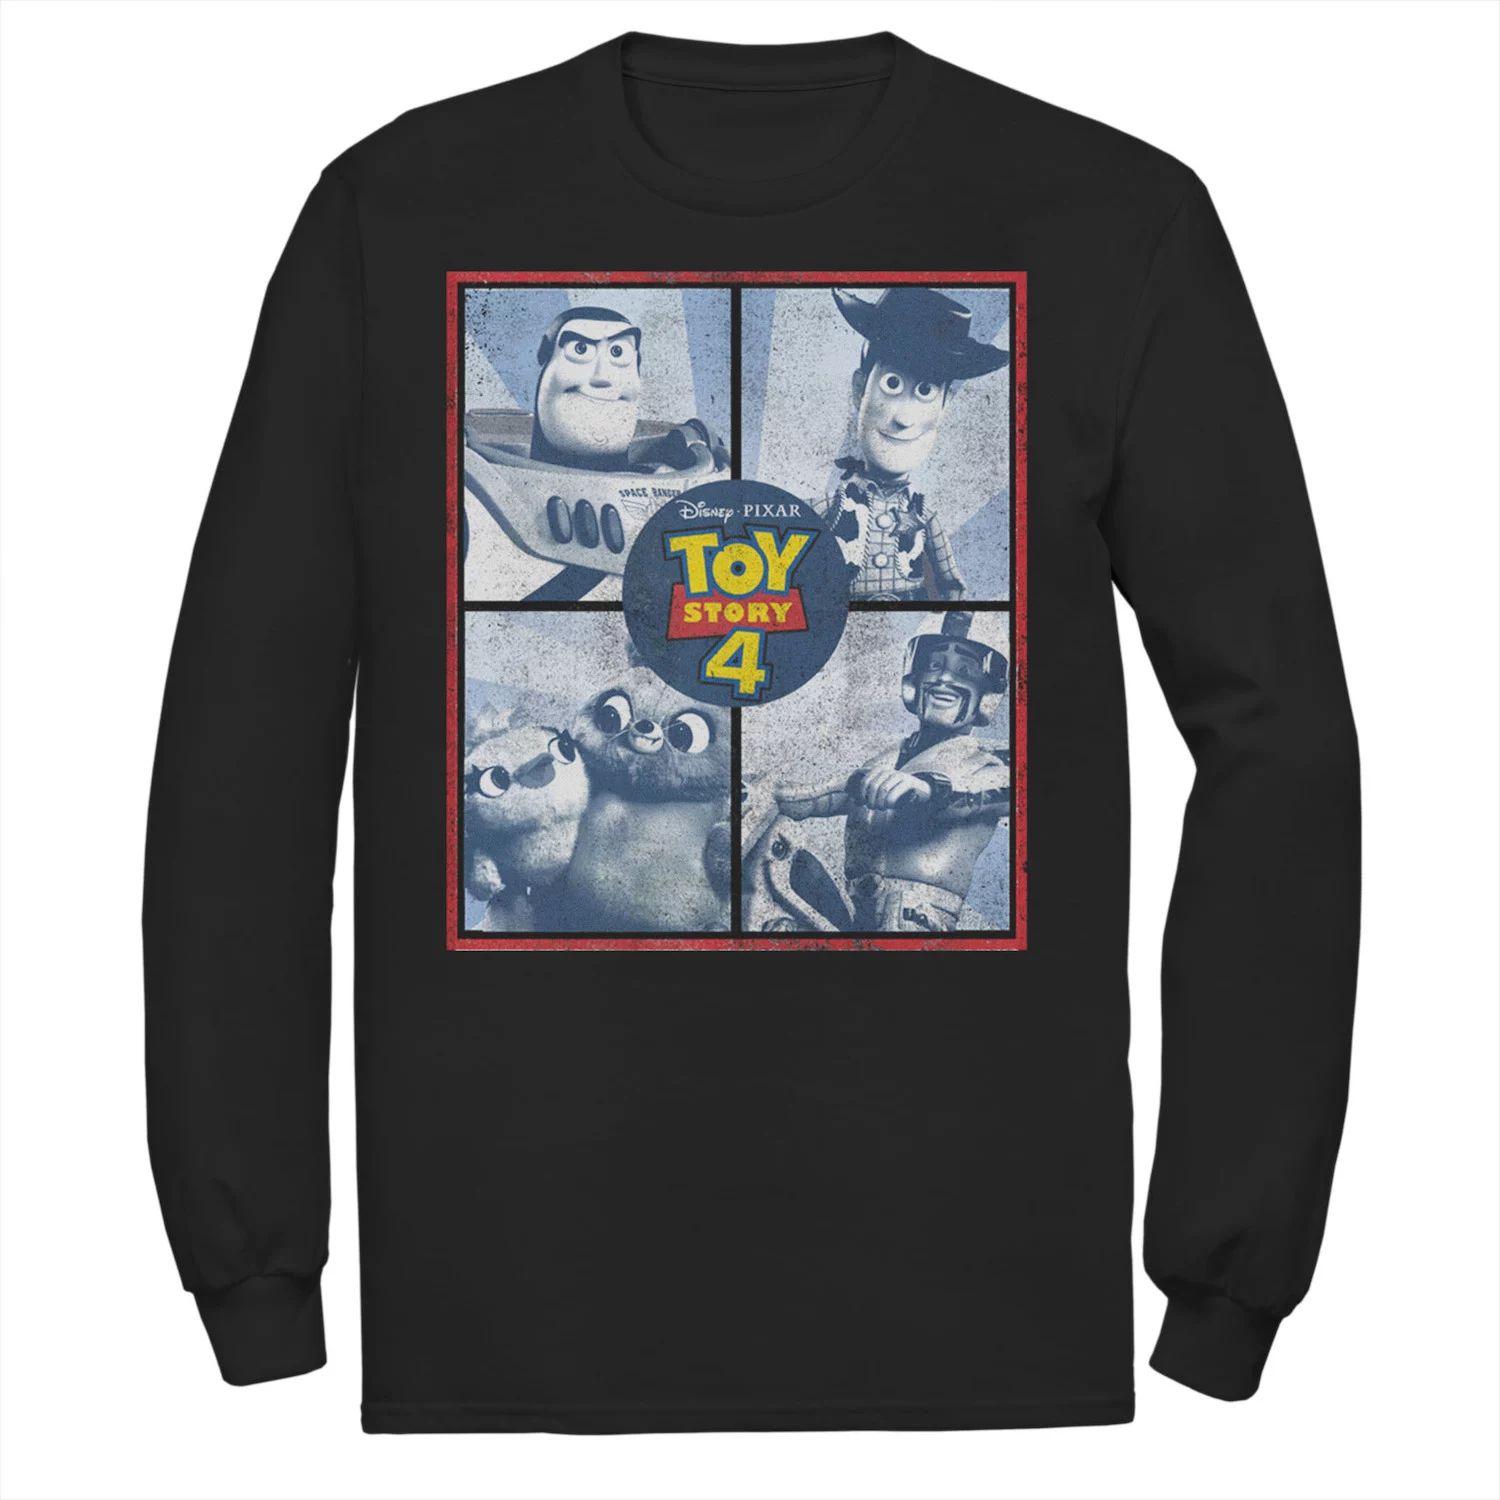 disney toy story 3 level 4 Мужская футболка Toy Story 4 Toy Boxes Disney / Pixar